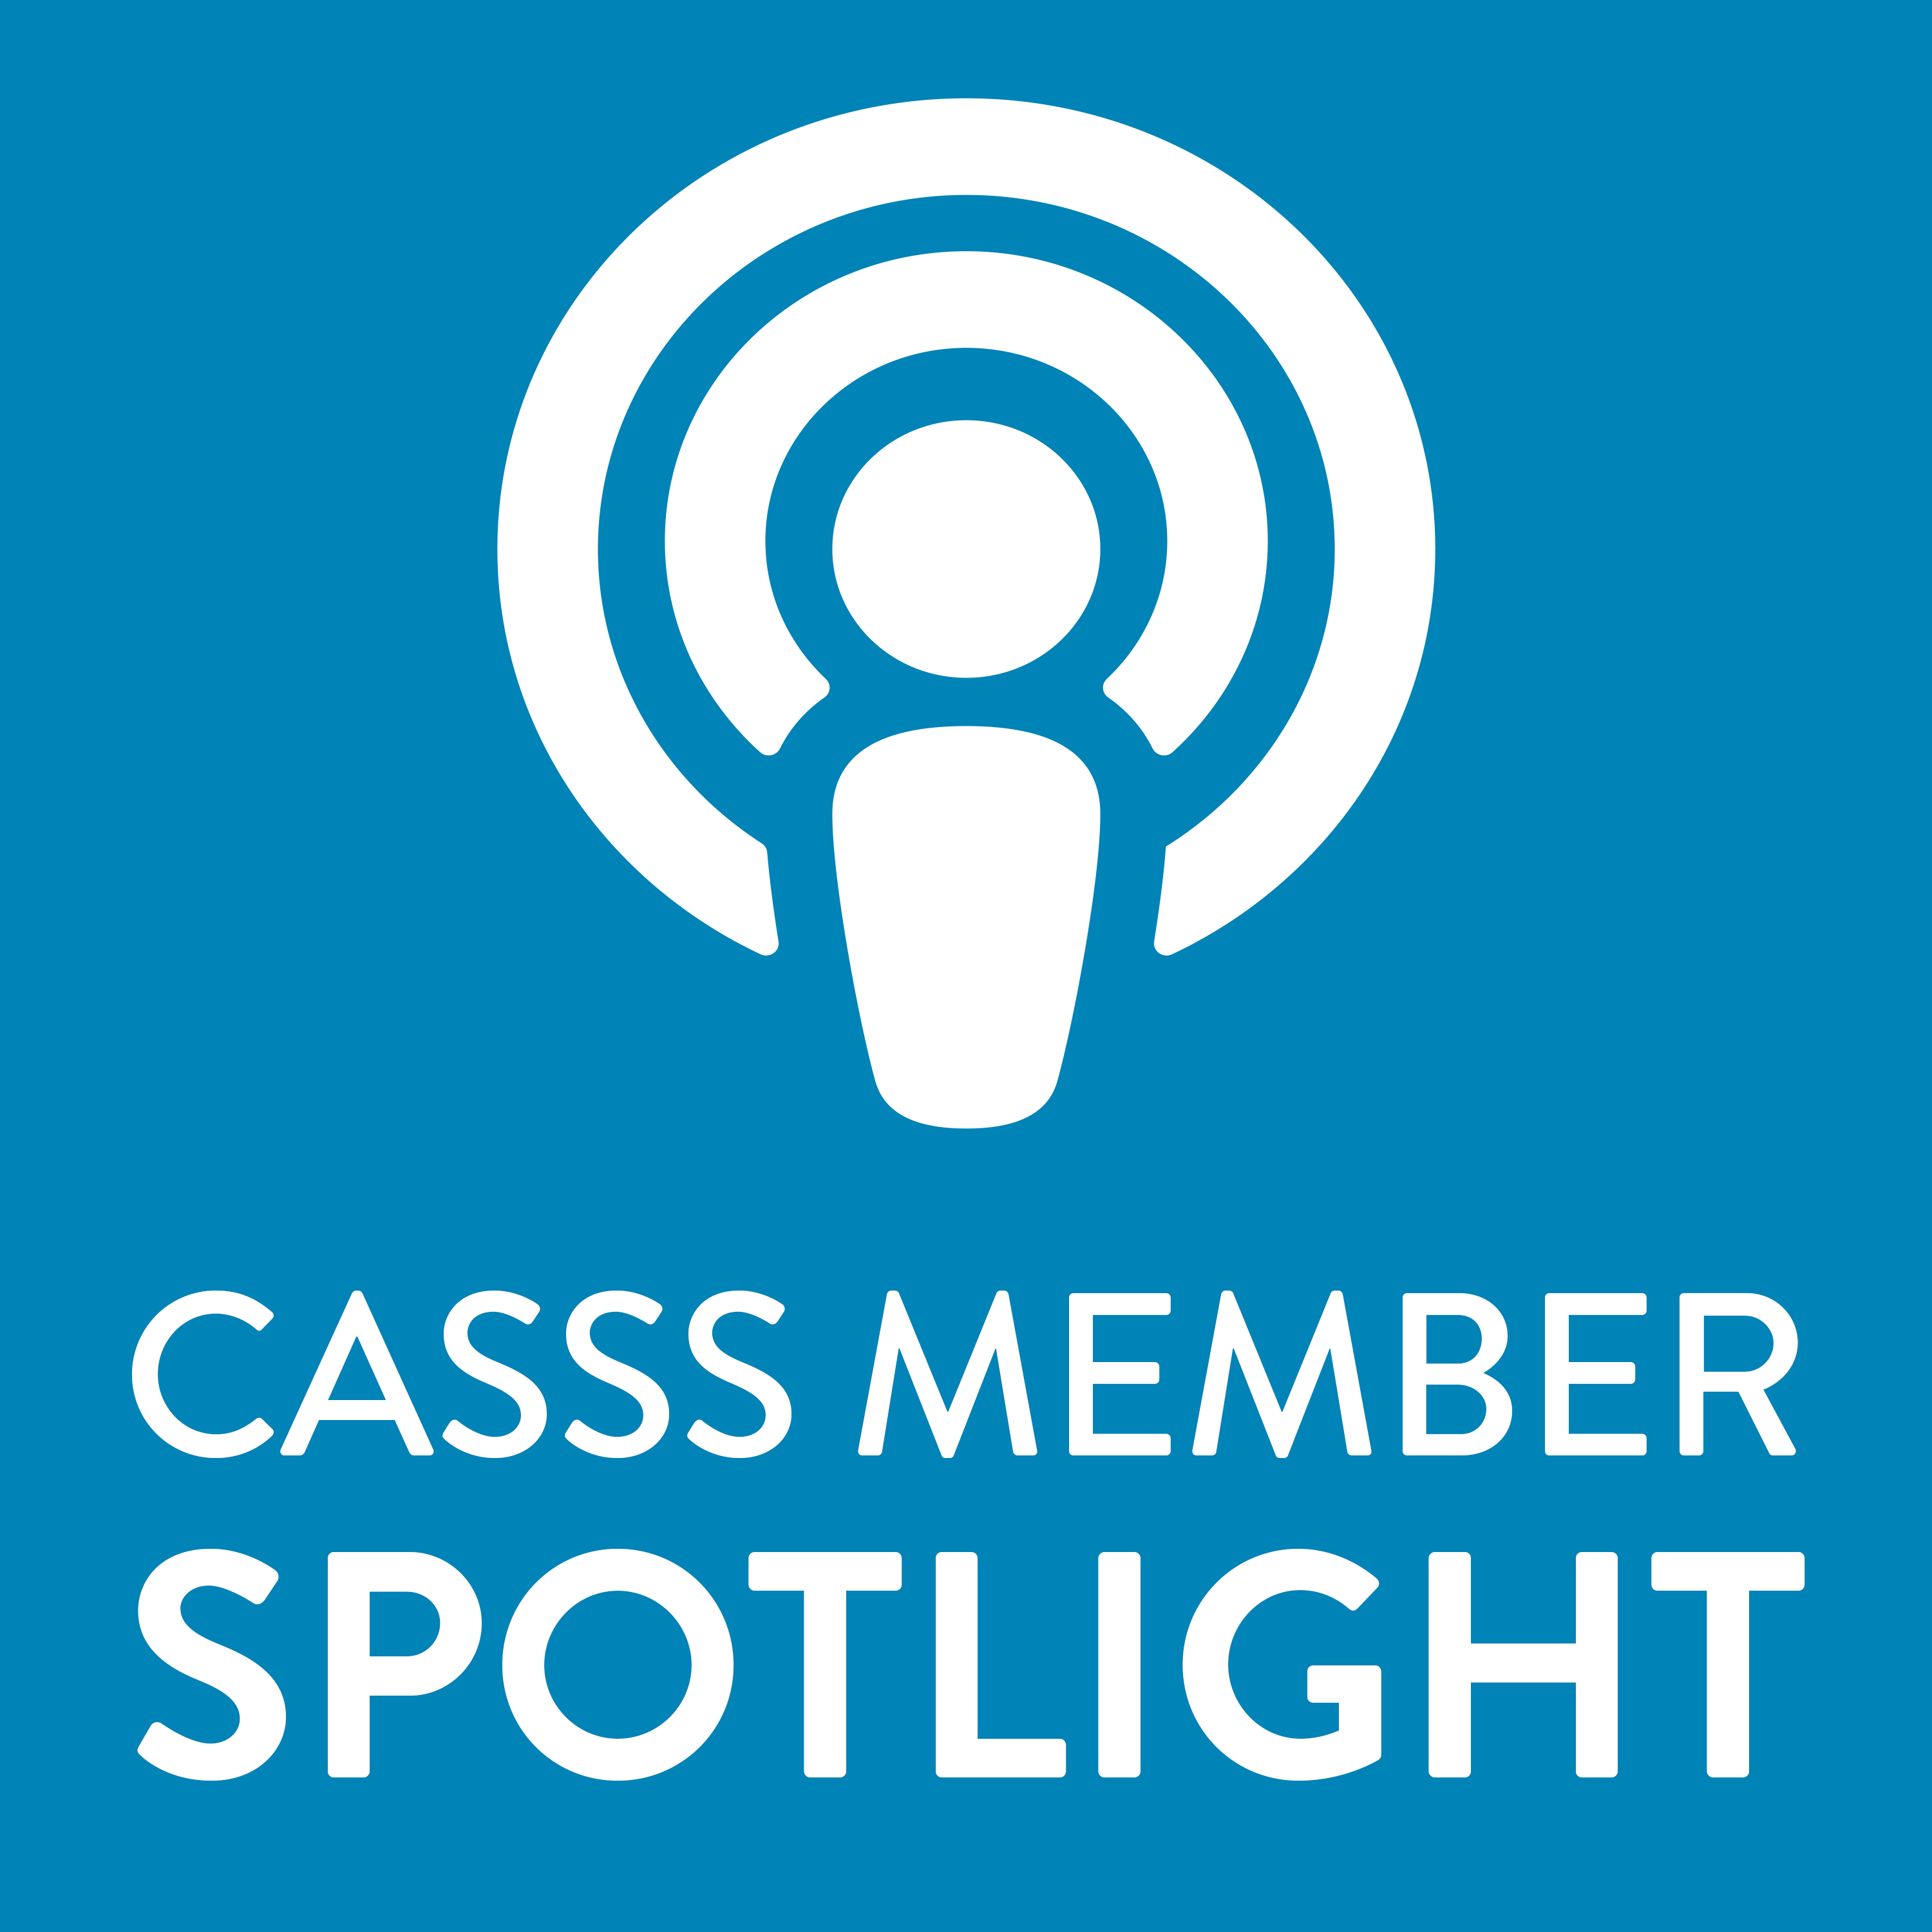 CASSS Member Spotlight